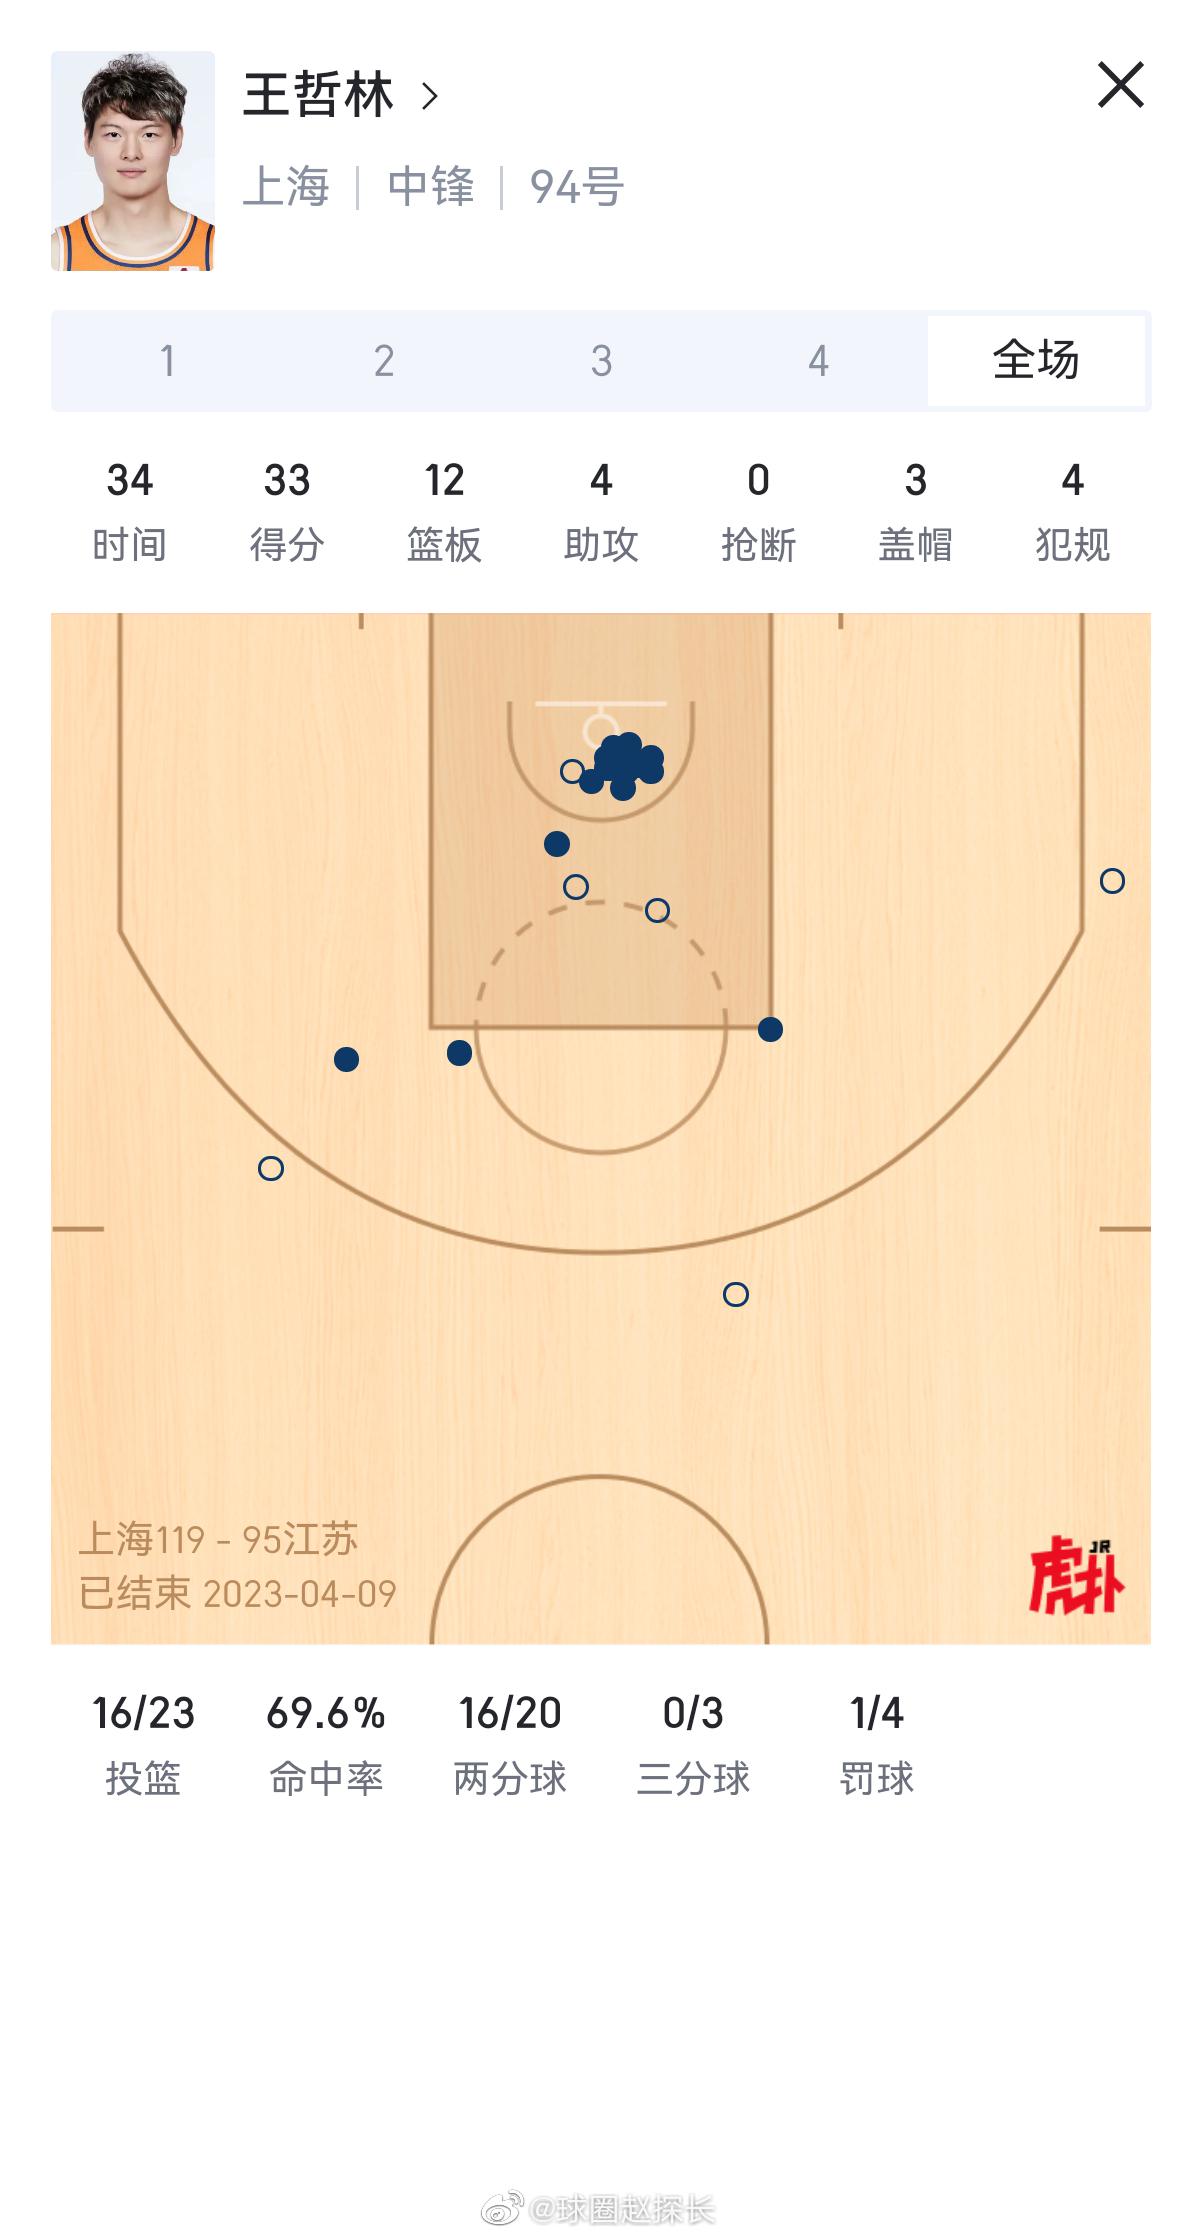 上海119-95大胜江苏，场面上可以说是全面压制的。大王33分12篮板在内线翻江(1)